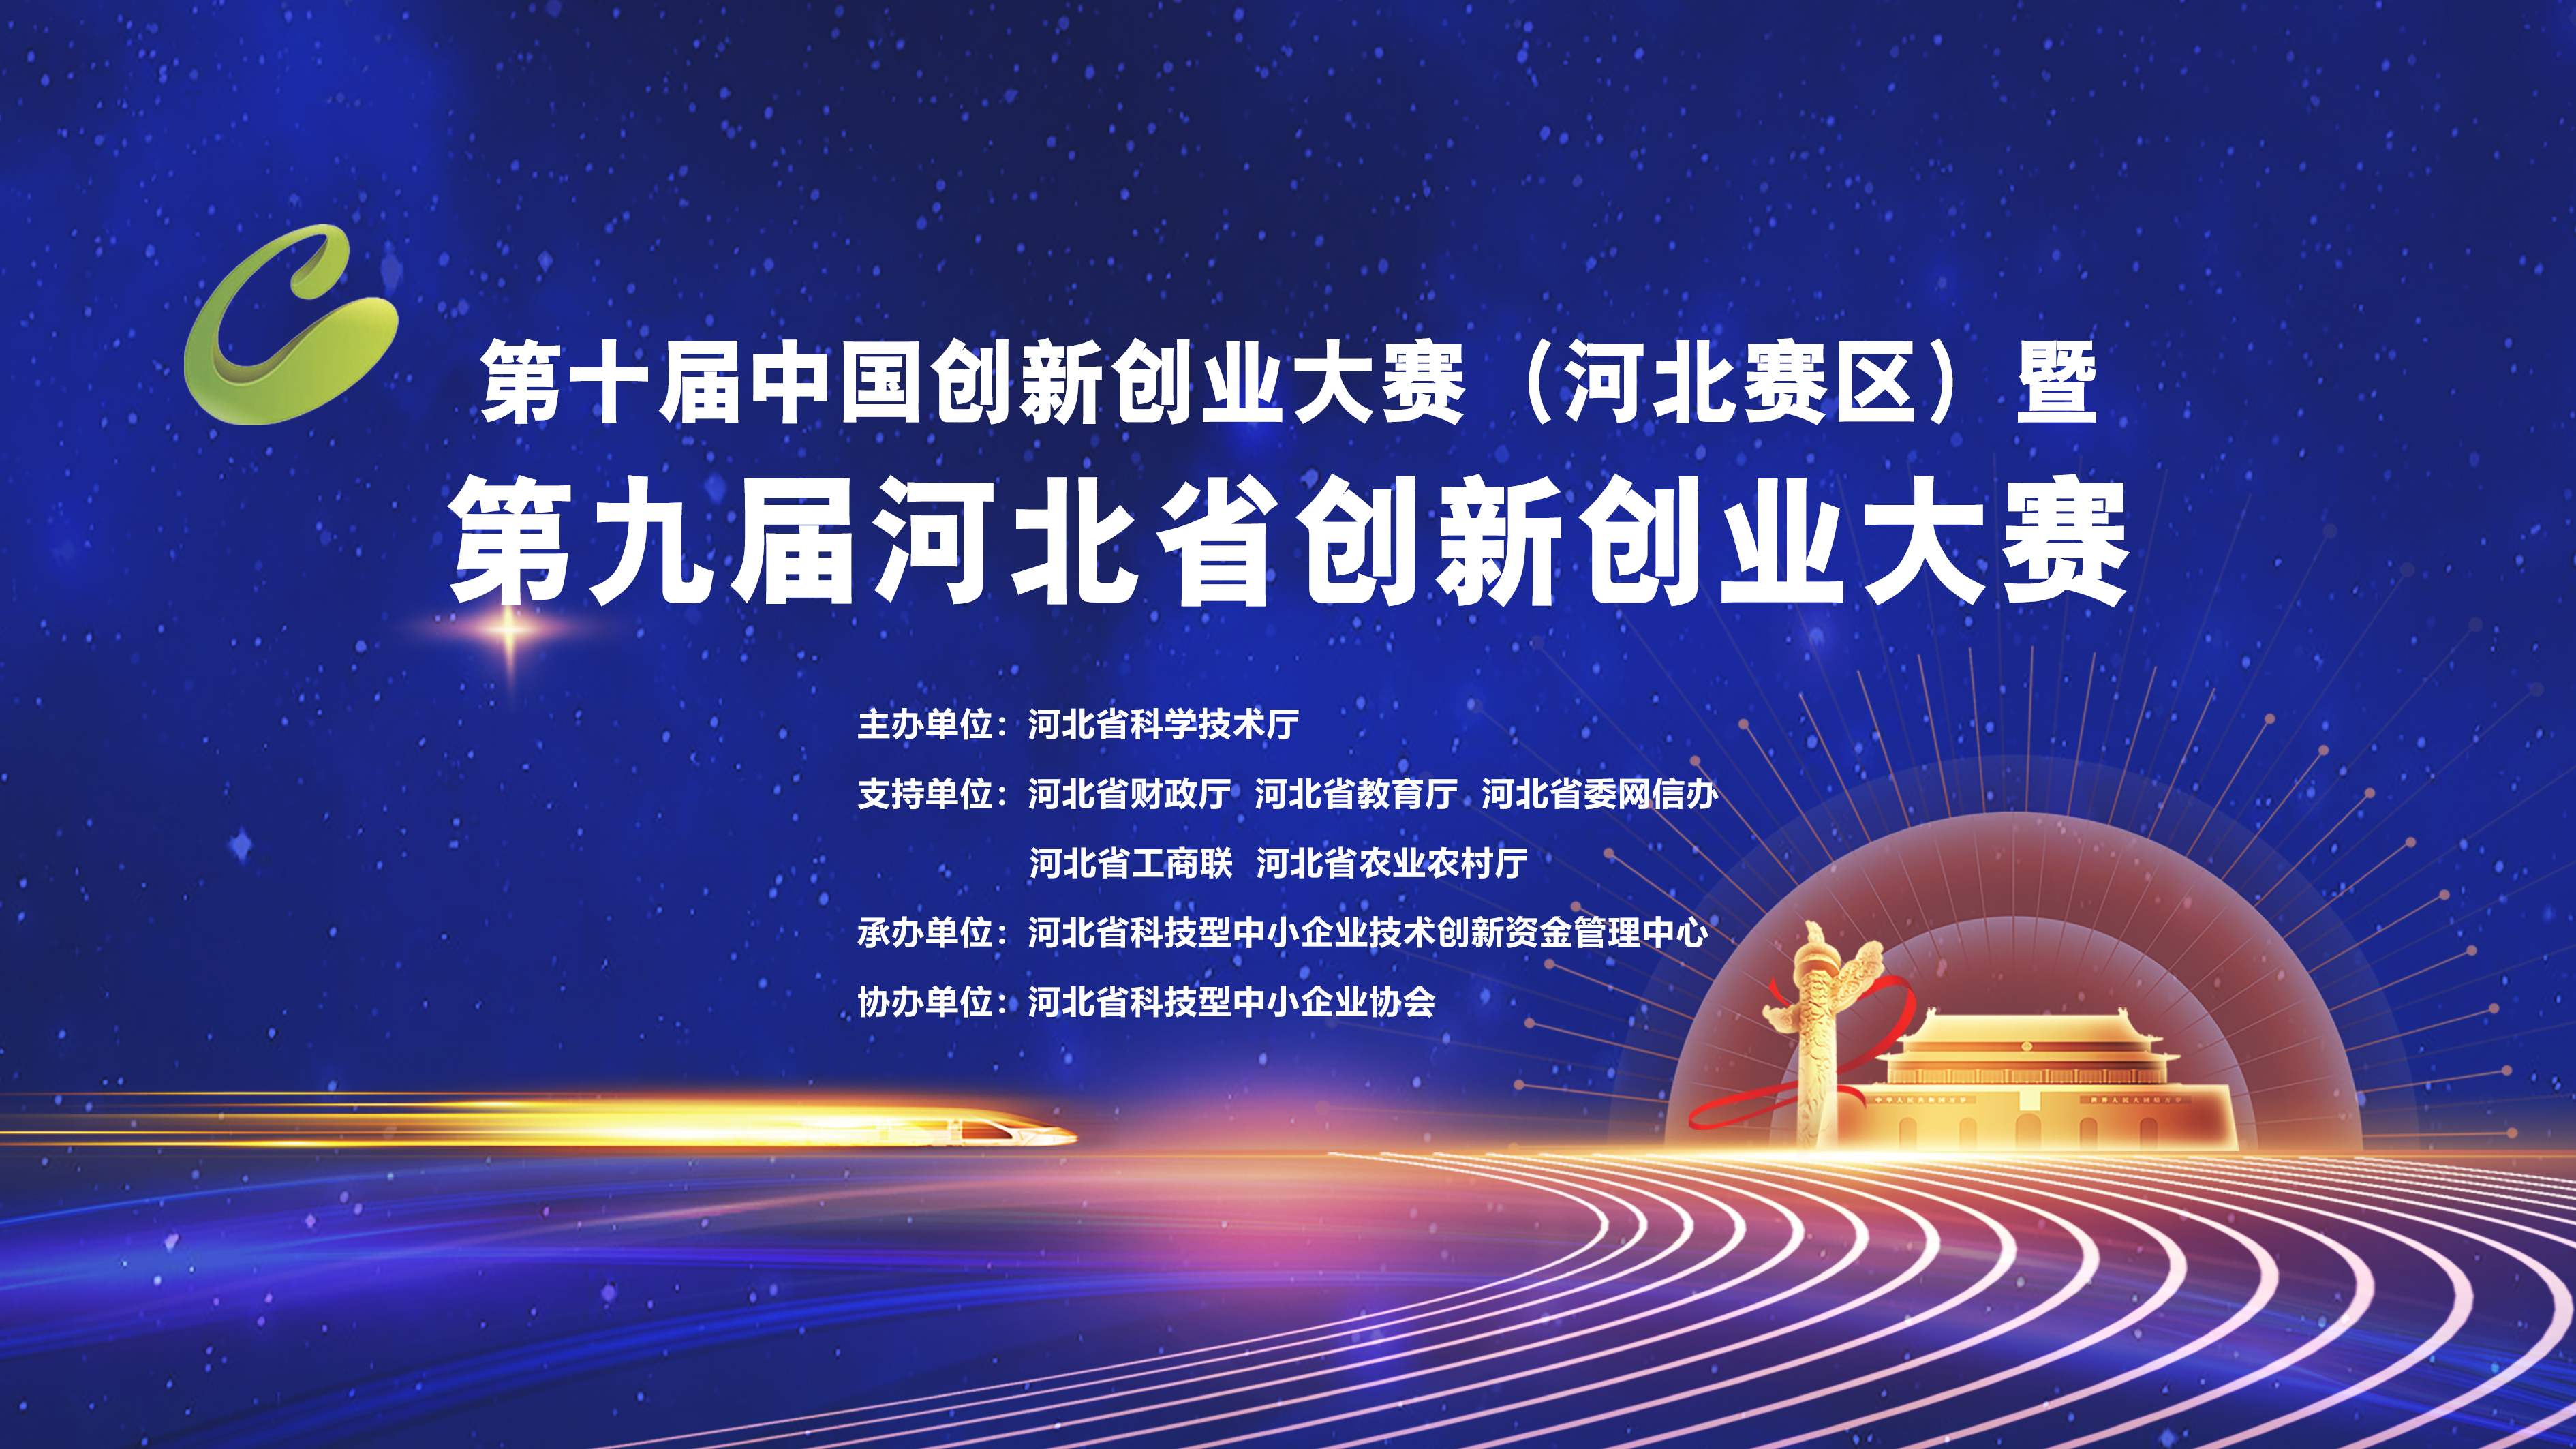 第十届中国创新创业大赛（河北赛区）暨第九届河北省创新创业大赛正式启动